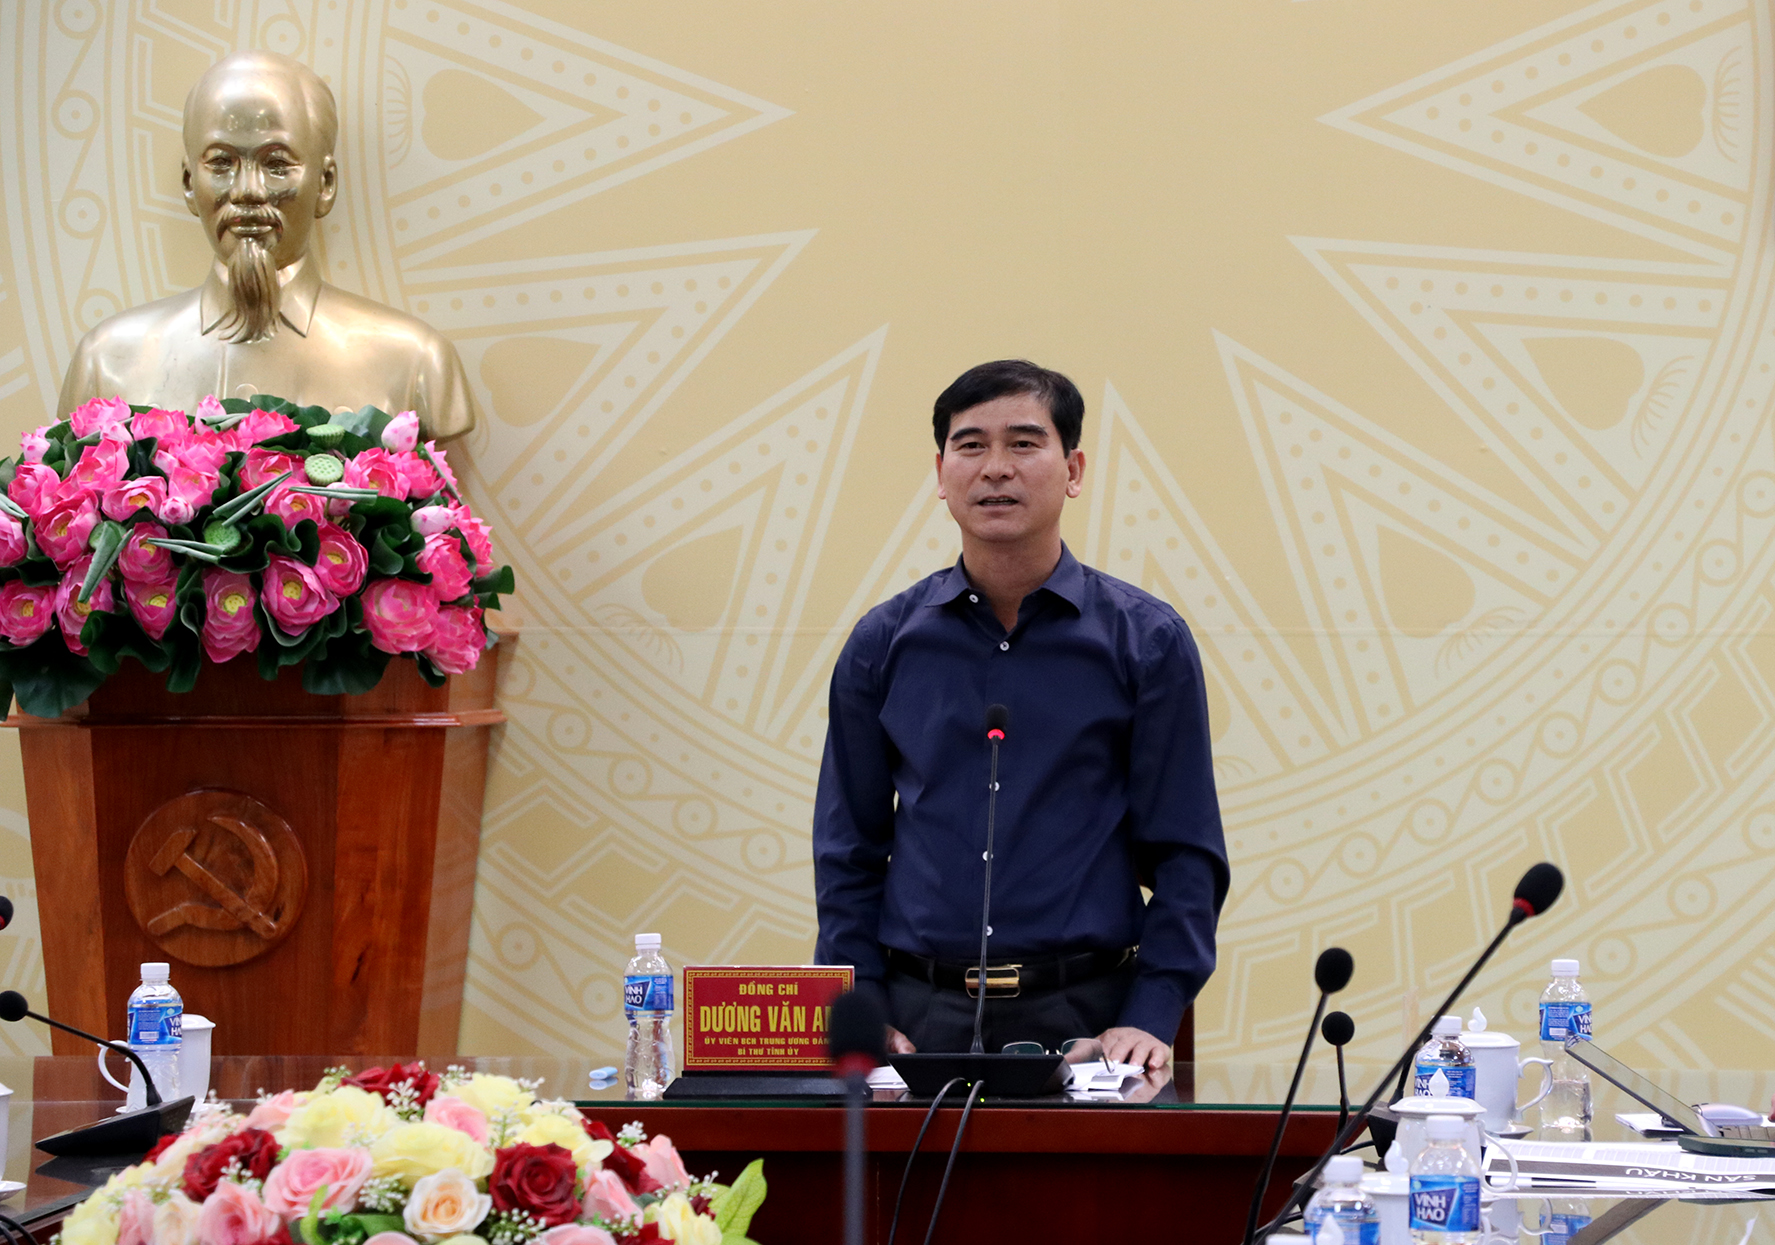 Bí thư Tỉnh ủy Bình Thuận - Dương Văn An, phát biểu